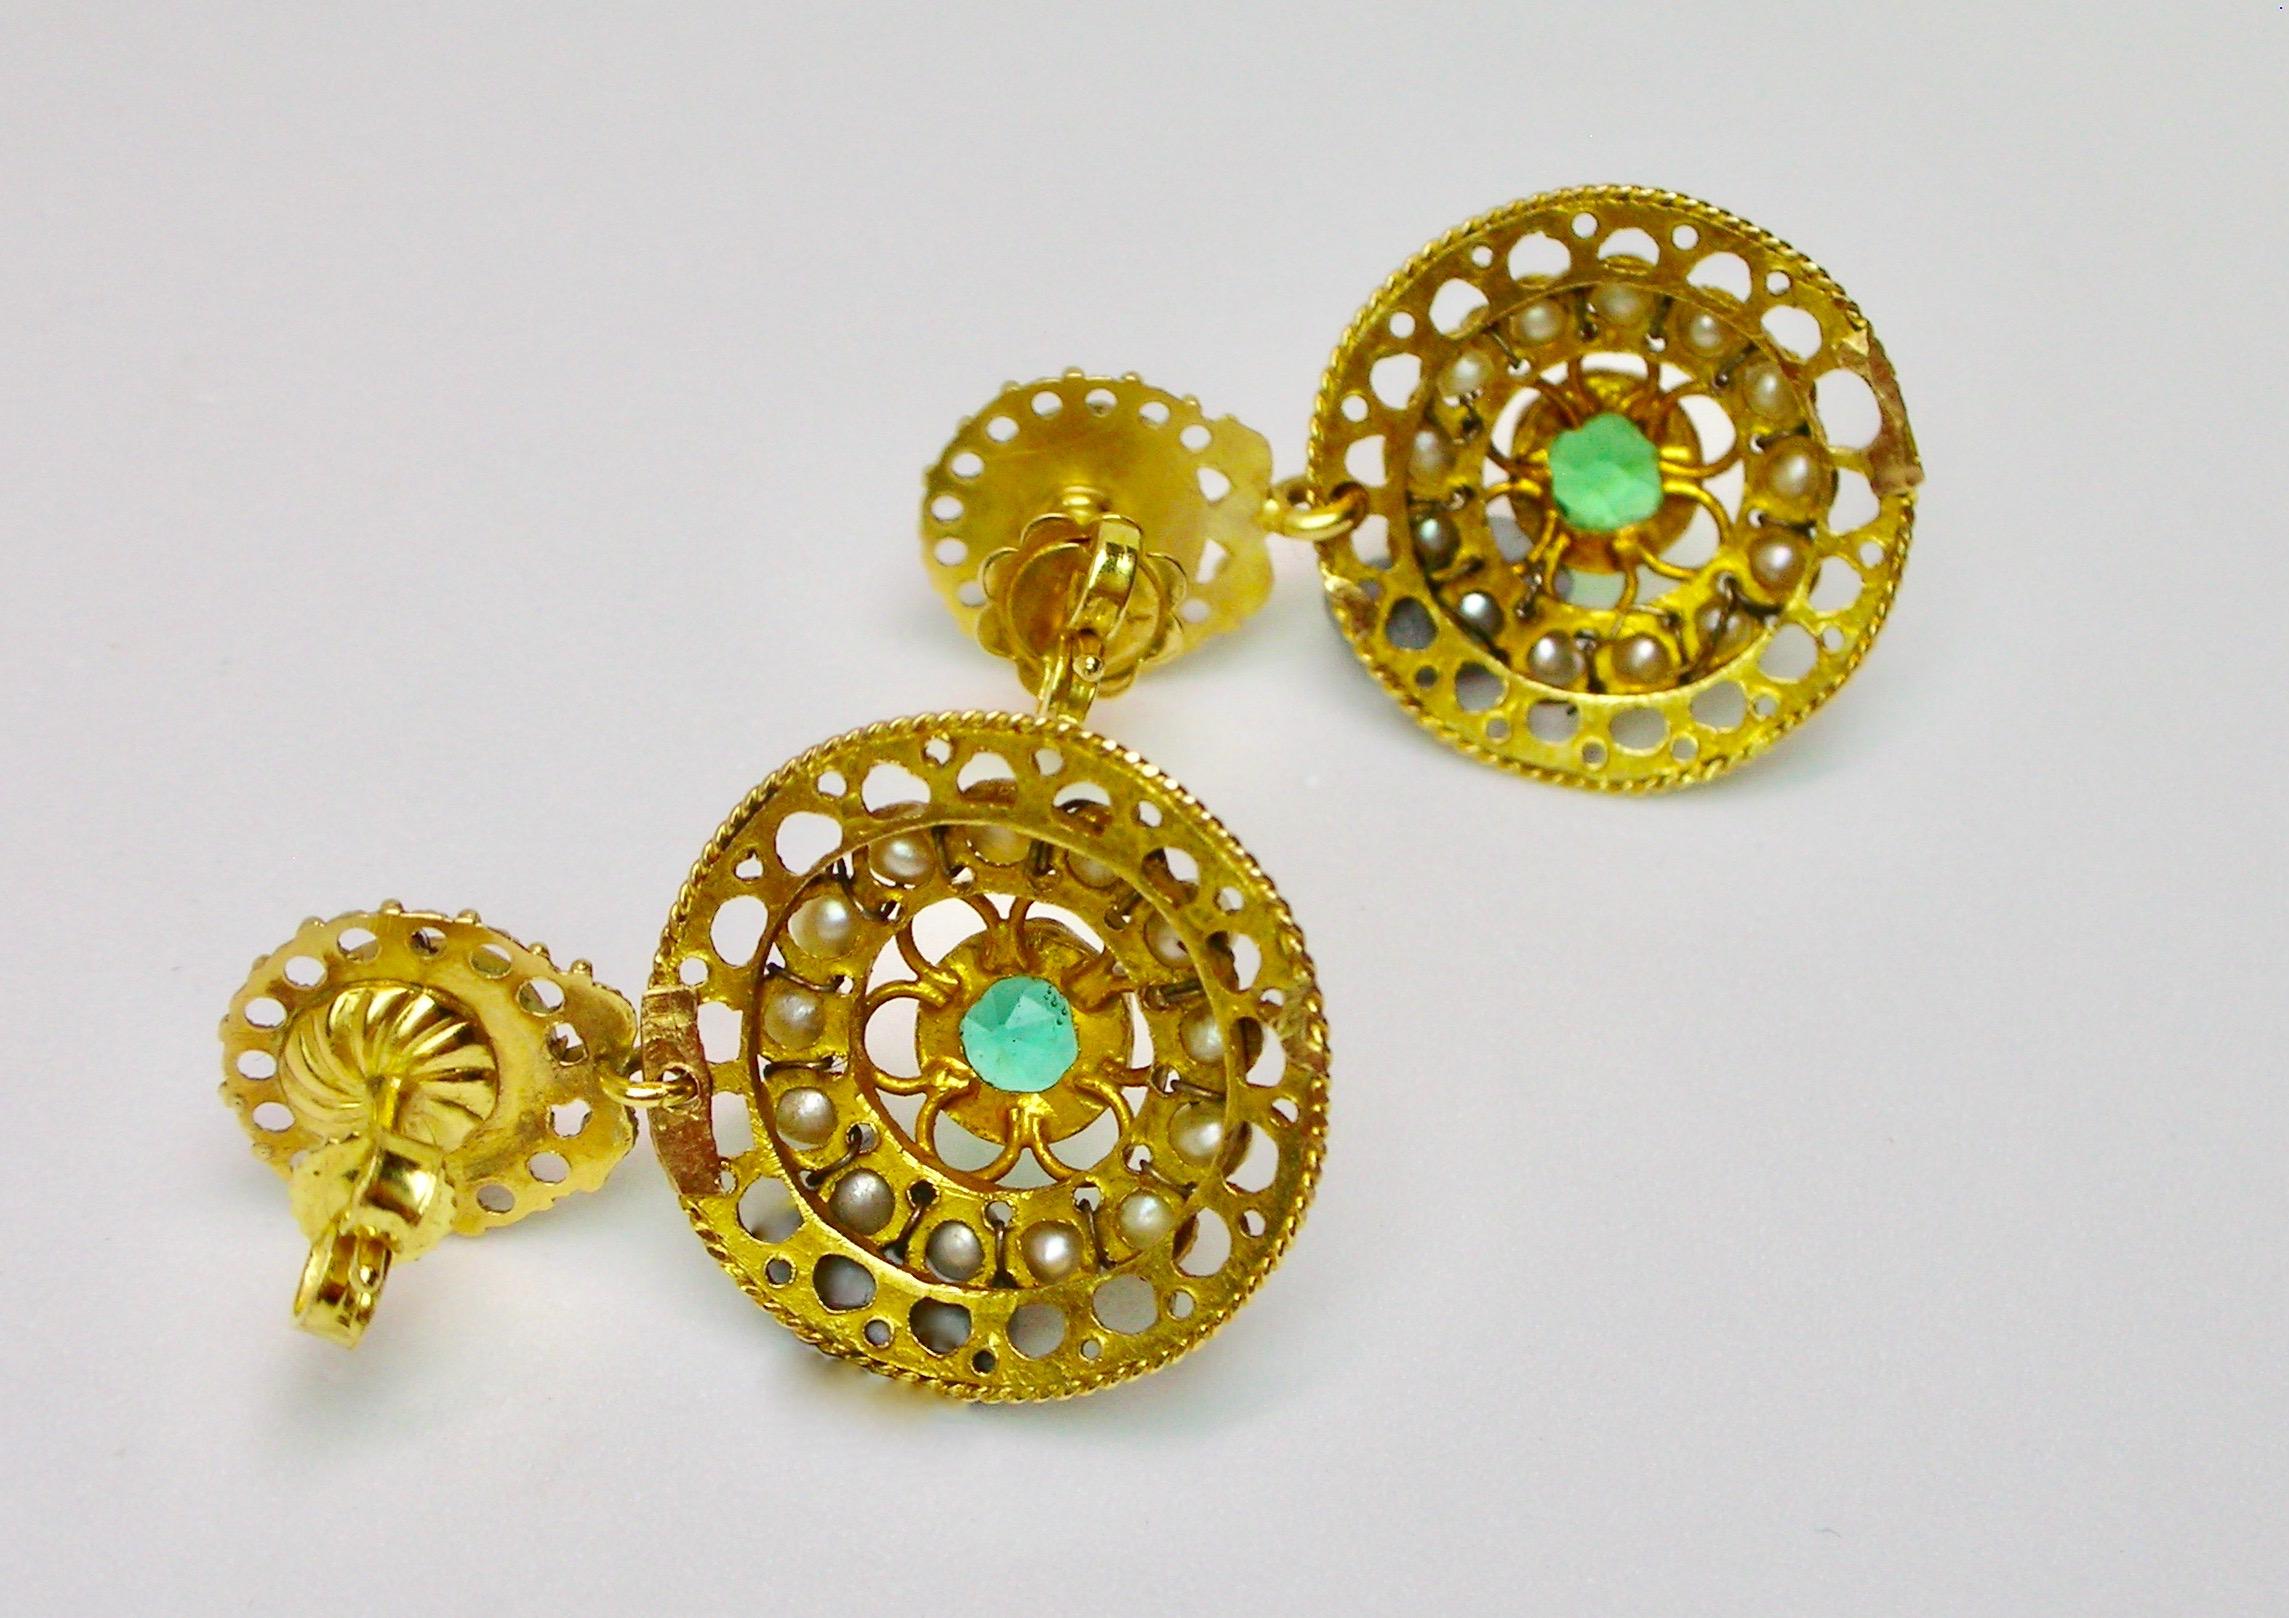 Boucles d'oreilles en or avec perles naturelles et pâte verte, probablement de la fin du 19e siècle.